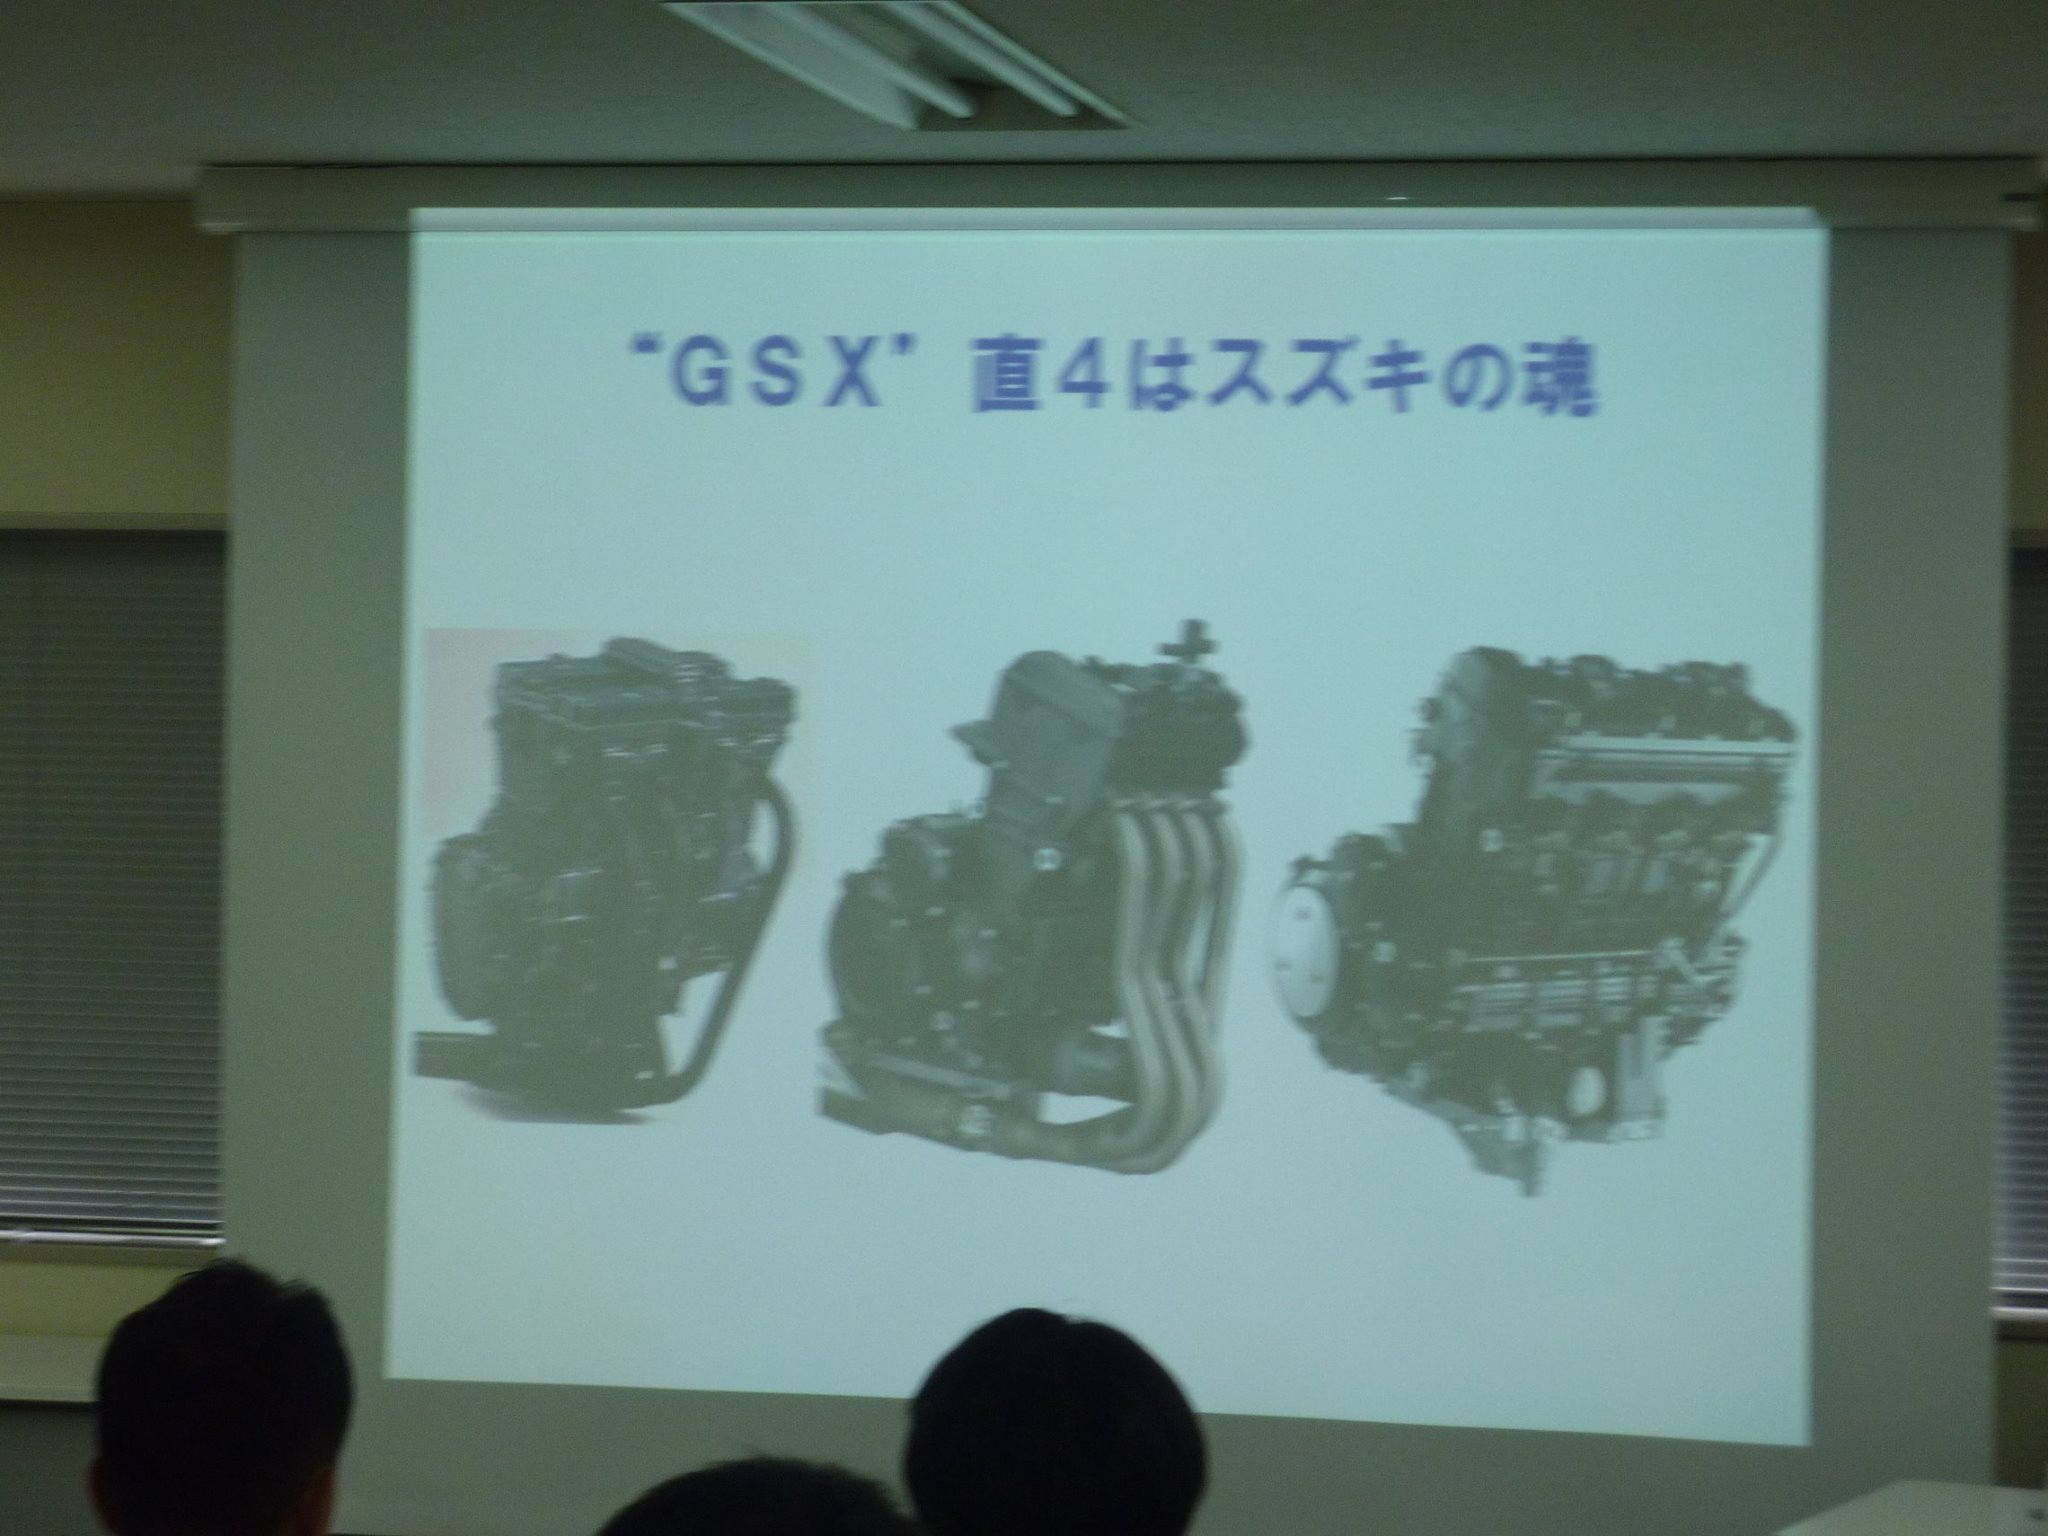 New Suzuki Motorcycle Engine